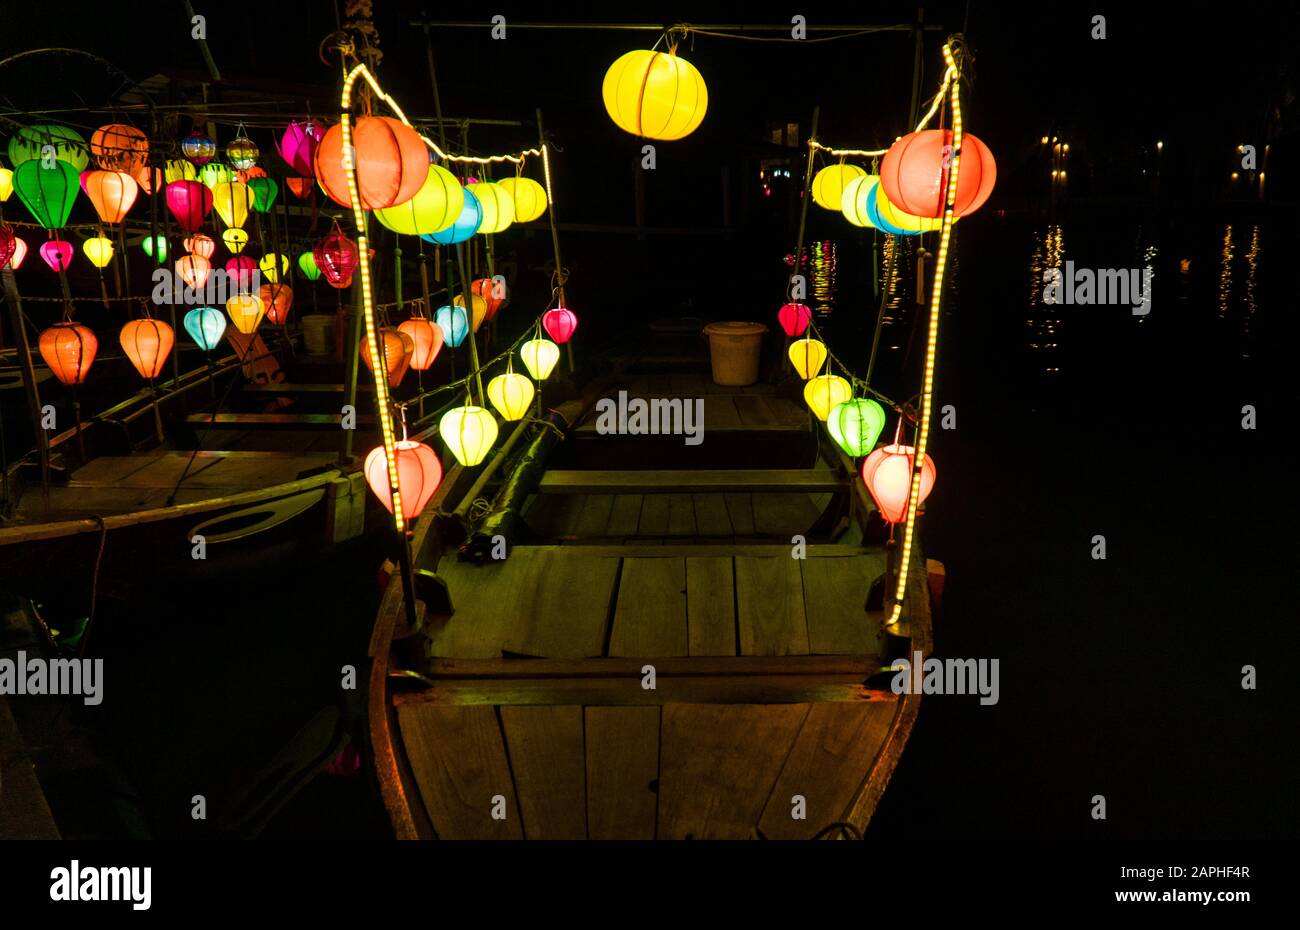 Lanterne si accendono di notte sulle barche a Hoi An, Vietnam. Famosa per la lanterna festival lungo il fiume. Foto Stock